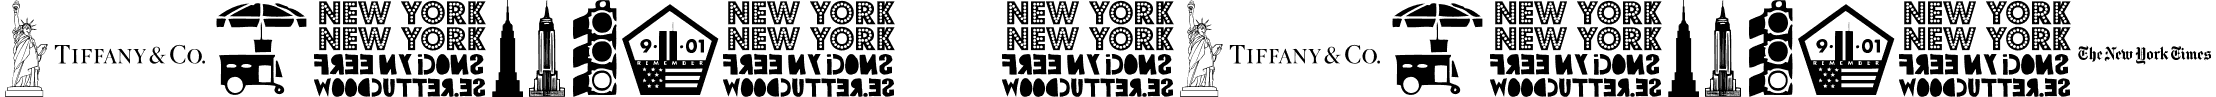 New York , New York 1 font - New York , New York 1.ttf.ttf